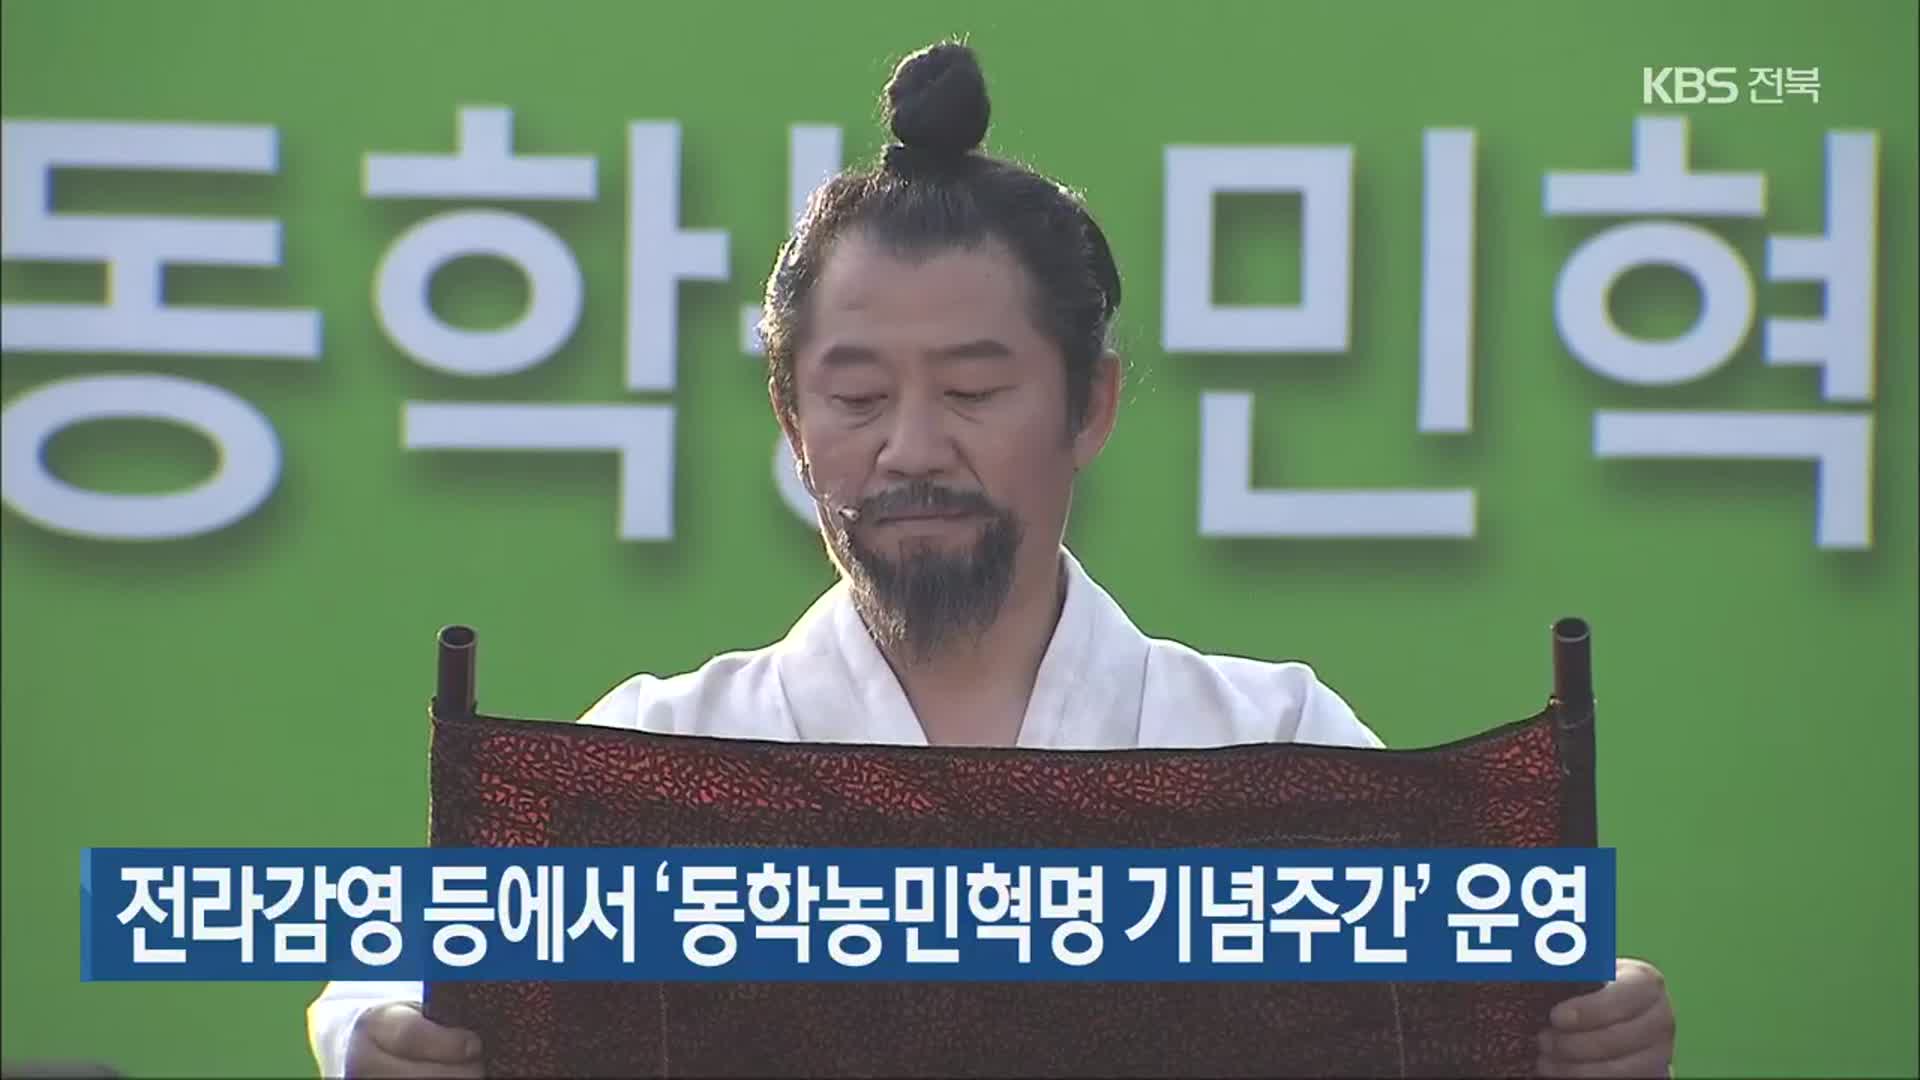 전라감영 등에서 ‘동학농민혁명 기념주간’ 운영